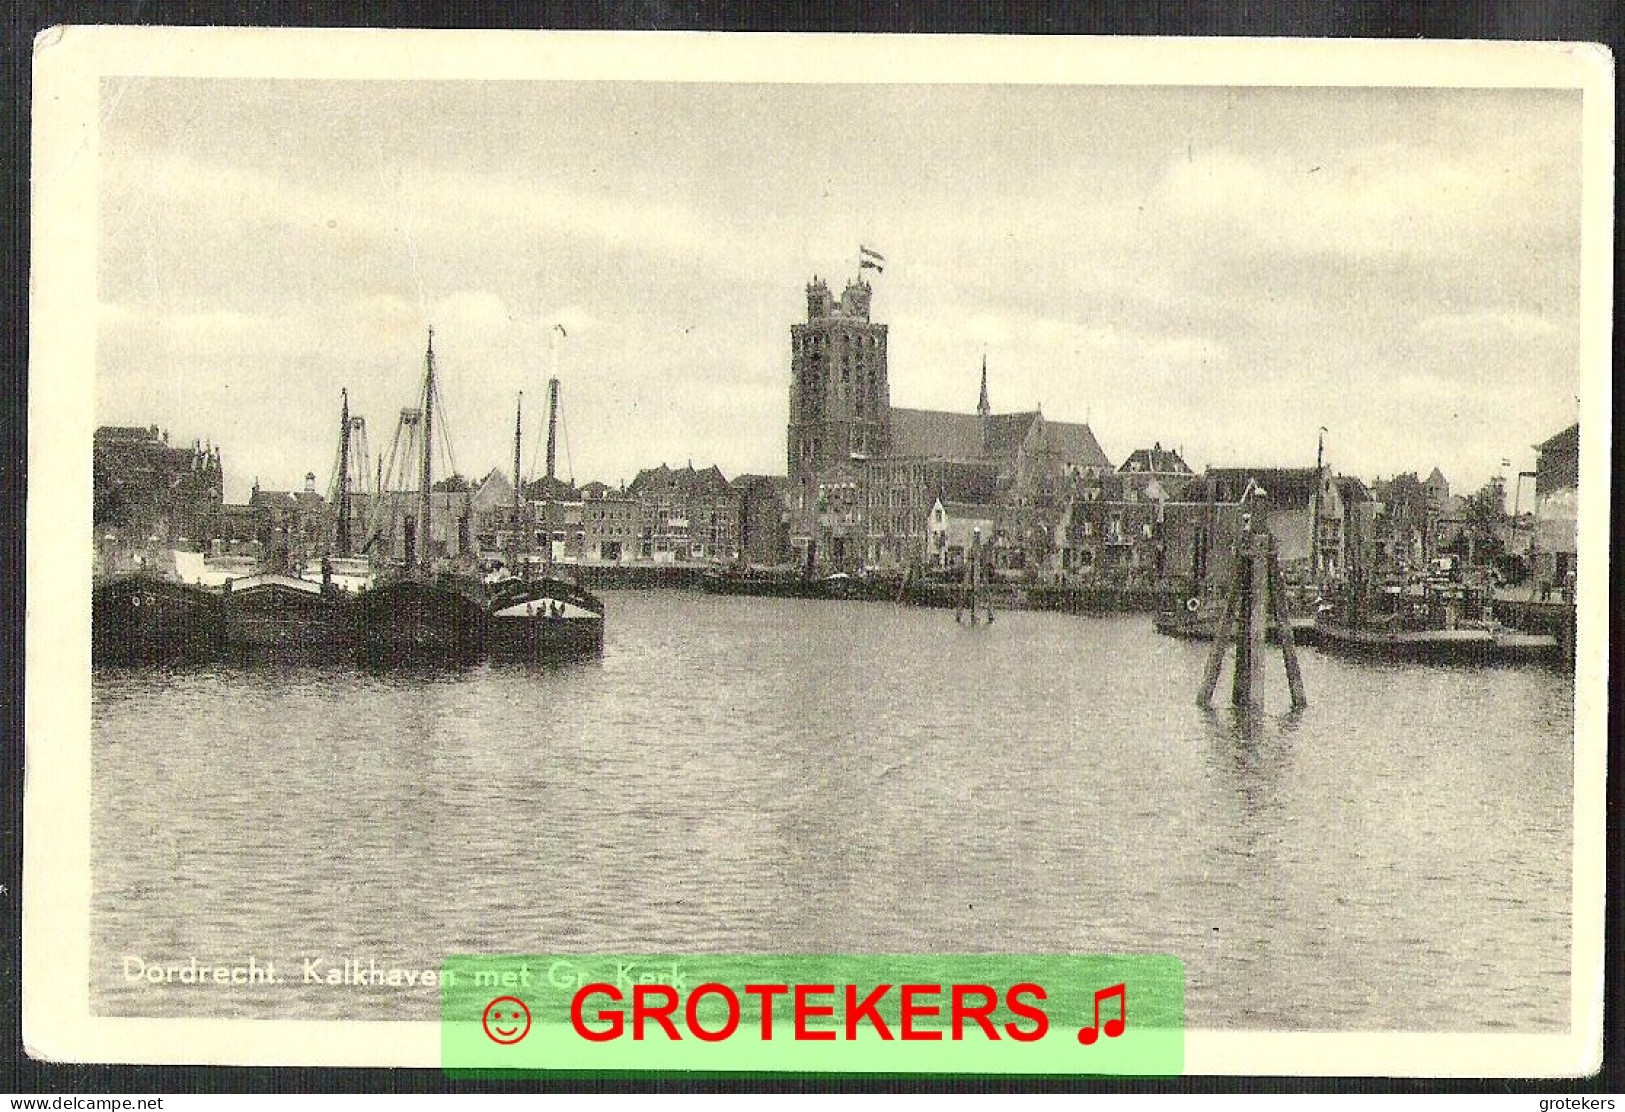 DORDRECHT Kalkhaven Met Groote Kerk 1960 - Dordrecht